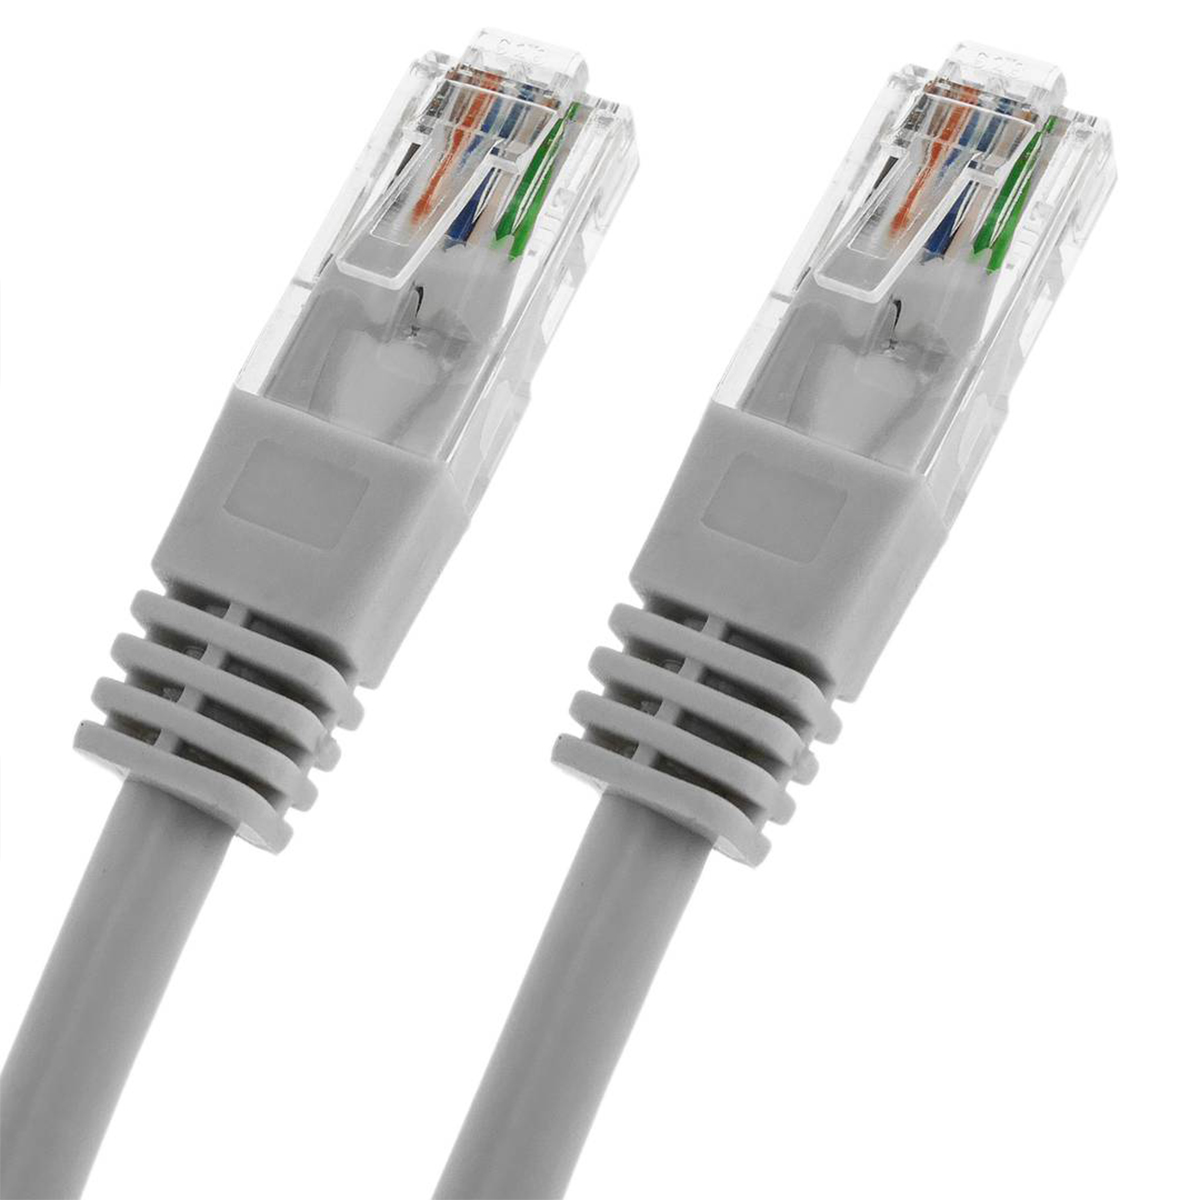 GC523-10 Metros Cable de Red 5E Cable UTP - Moldeado - Naranja